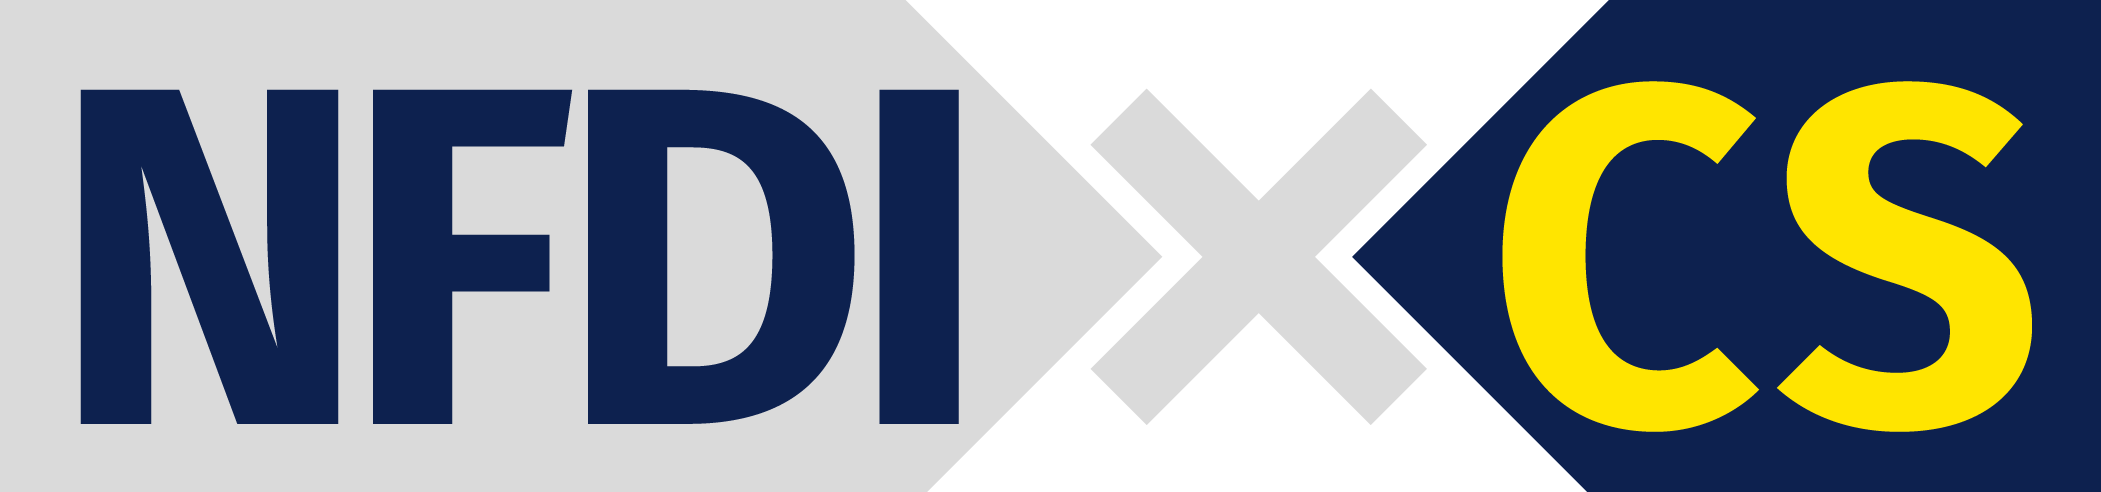 NFDIxCS Logo